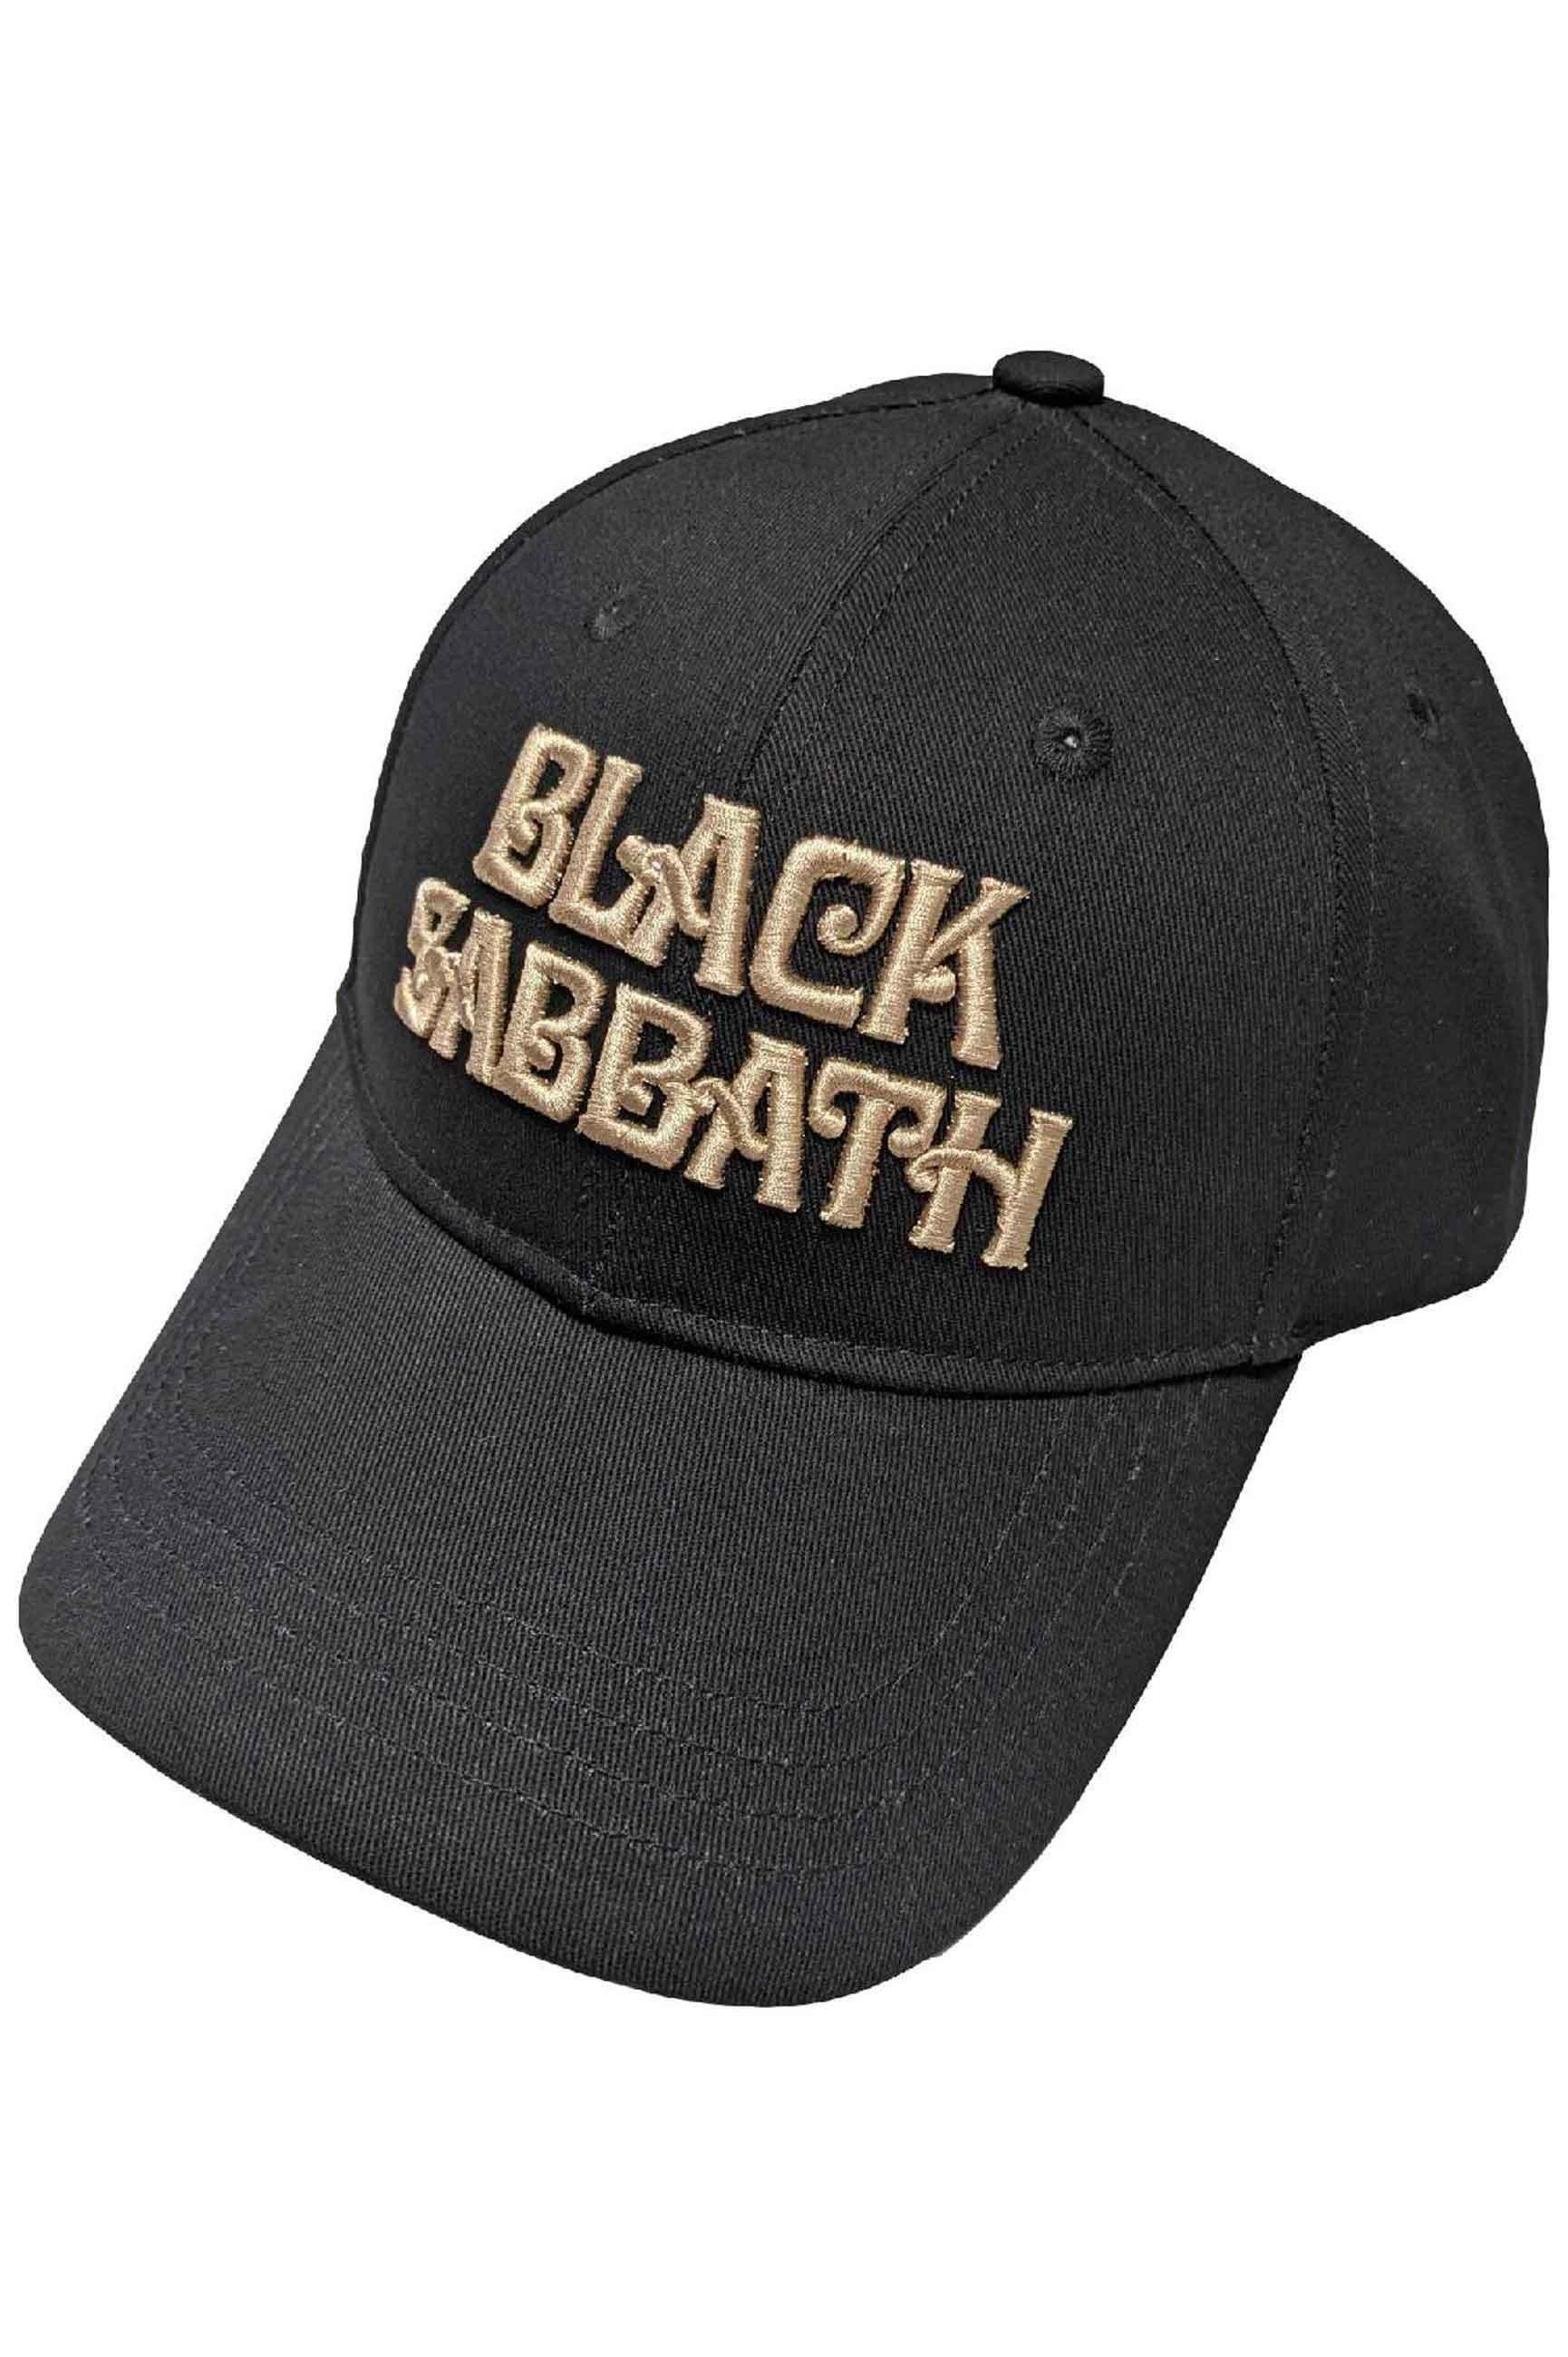 Бейсбольная кепка с текстовым ремешком и логотипом Black Sabbath, черный бейсболка black